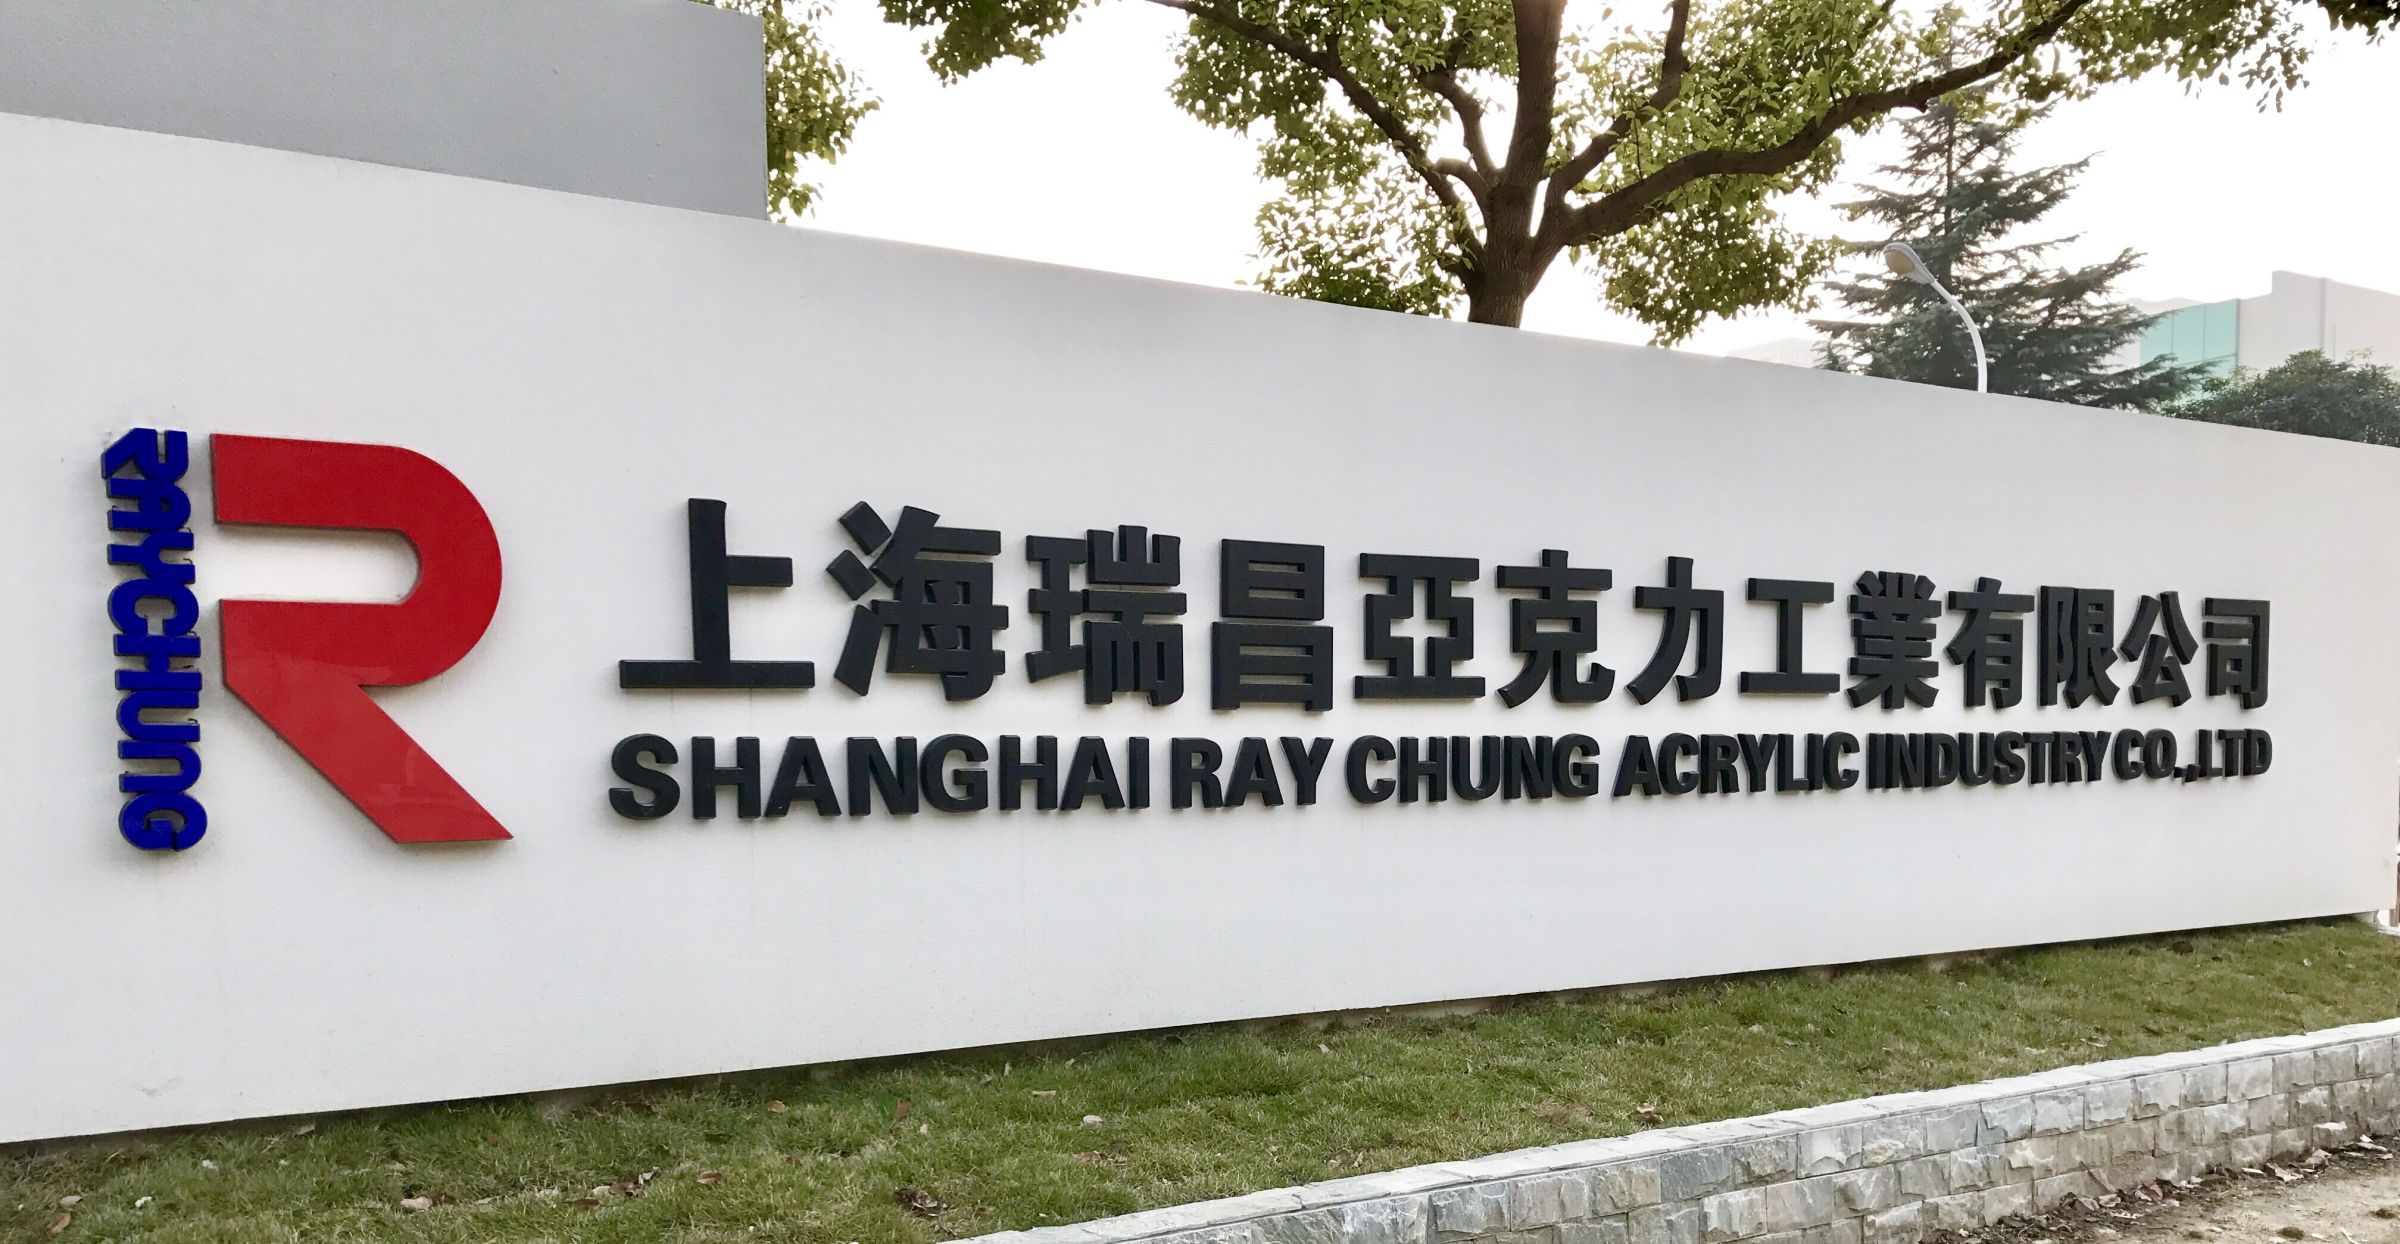 Shanghai Ray Chung Acrylic façade sign